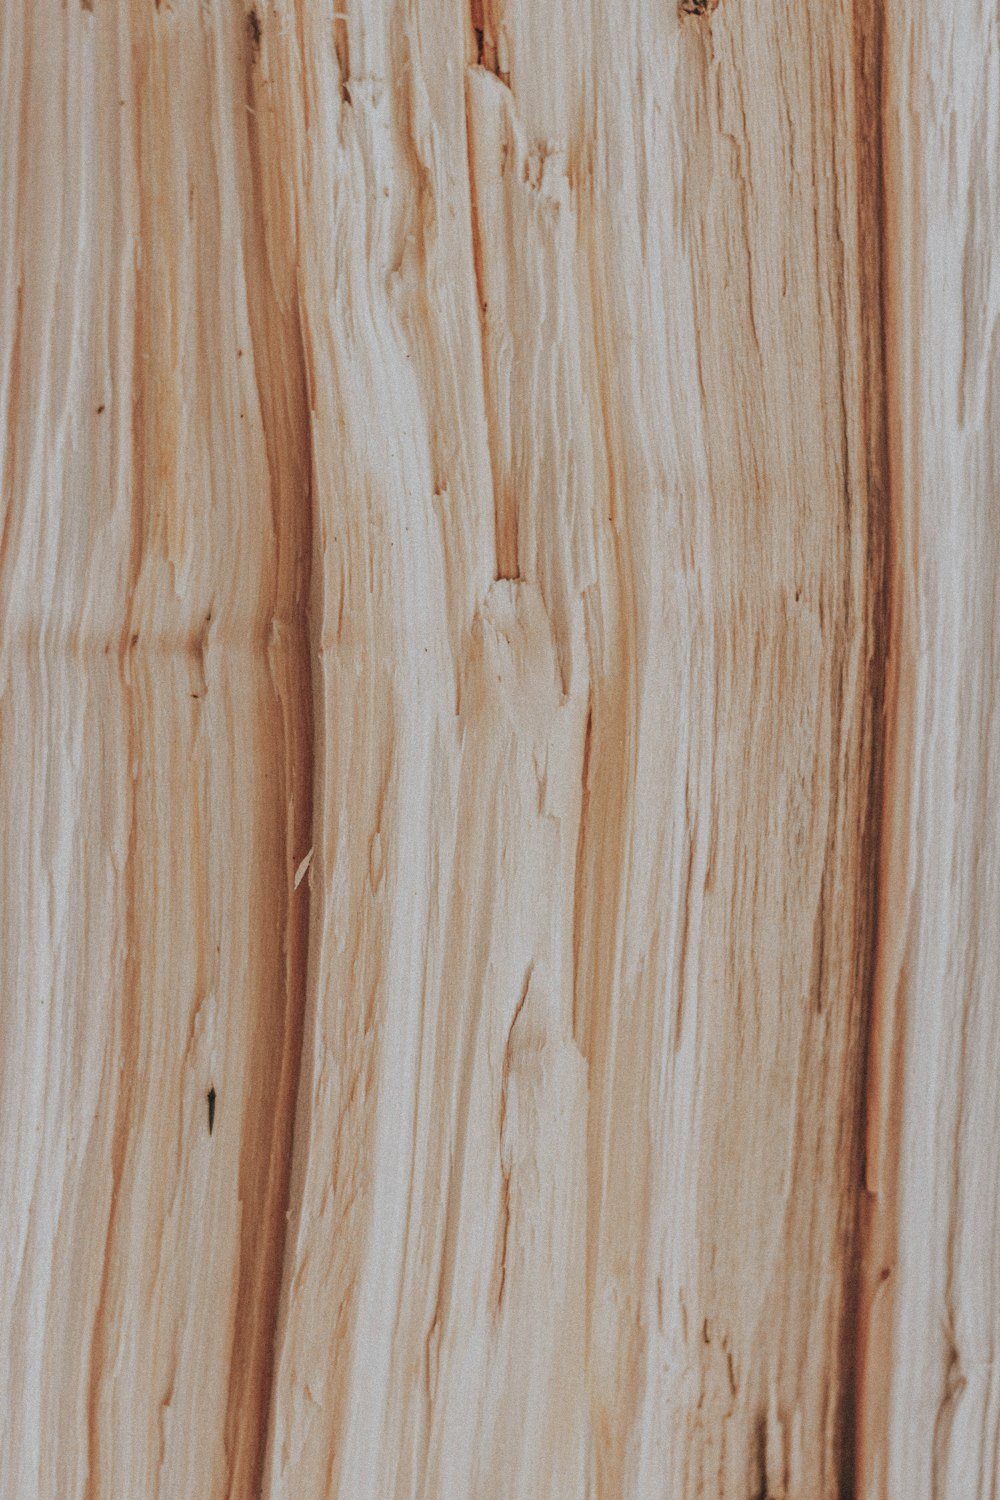 Superficie de madera marrón y blanca